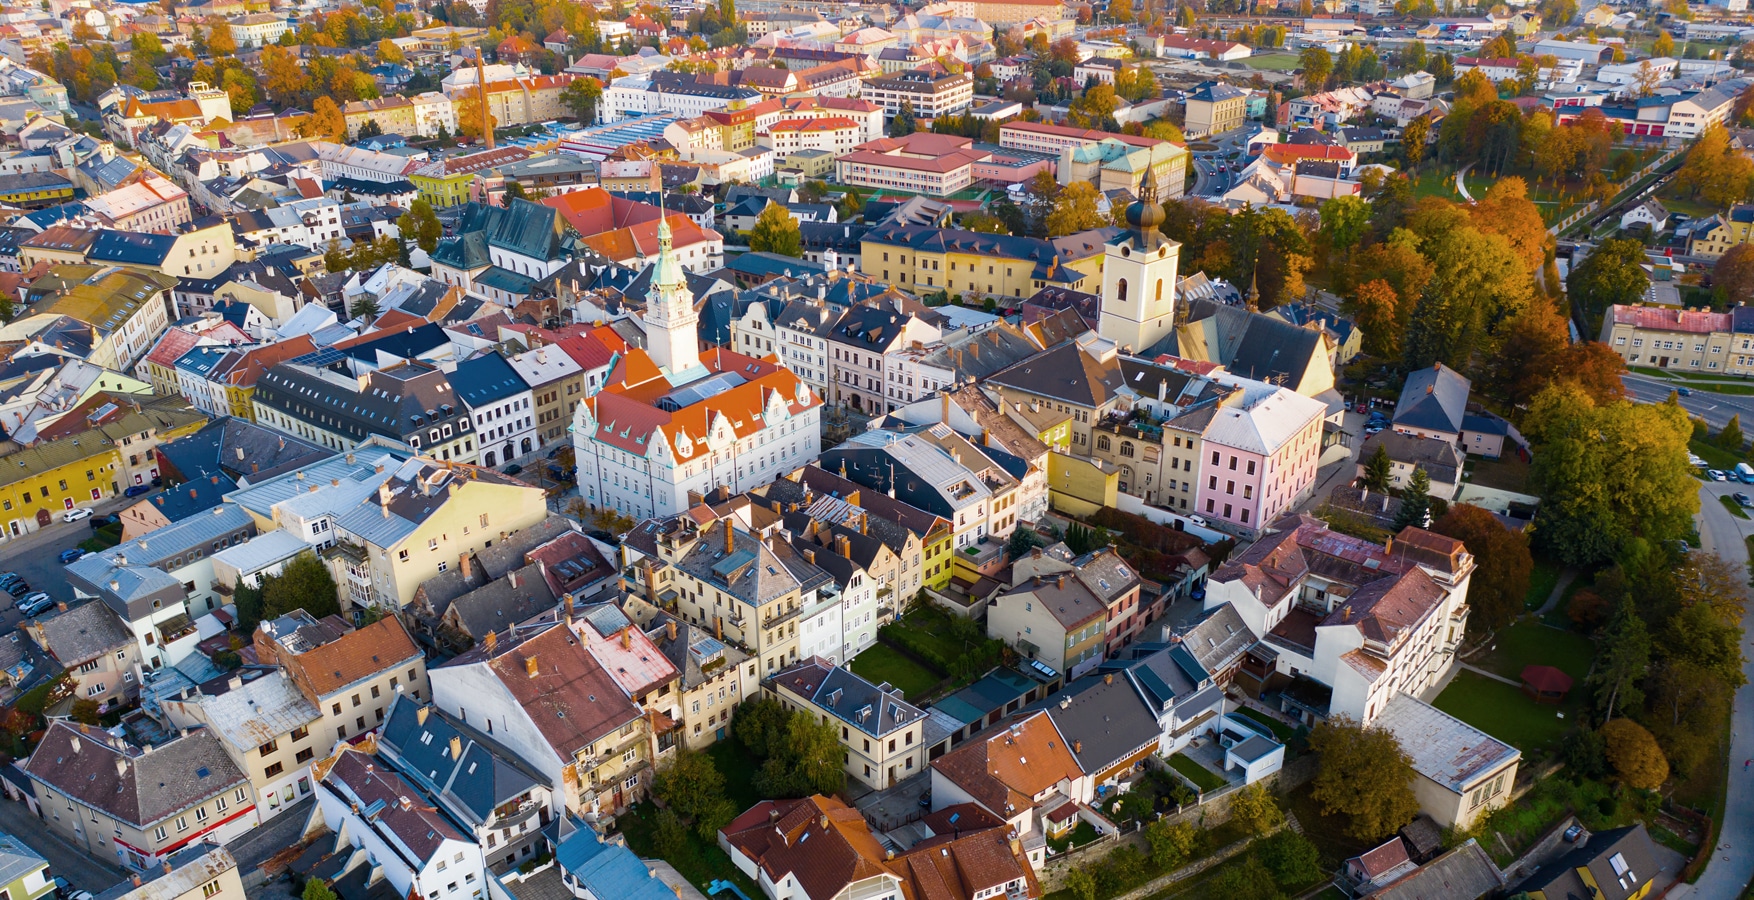 Pohled na centrum Šumperku s radnicí a kostelem sv. Jana Křtitele z ptačí perspektivy